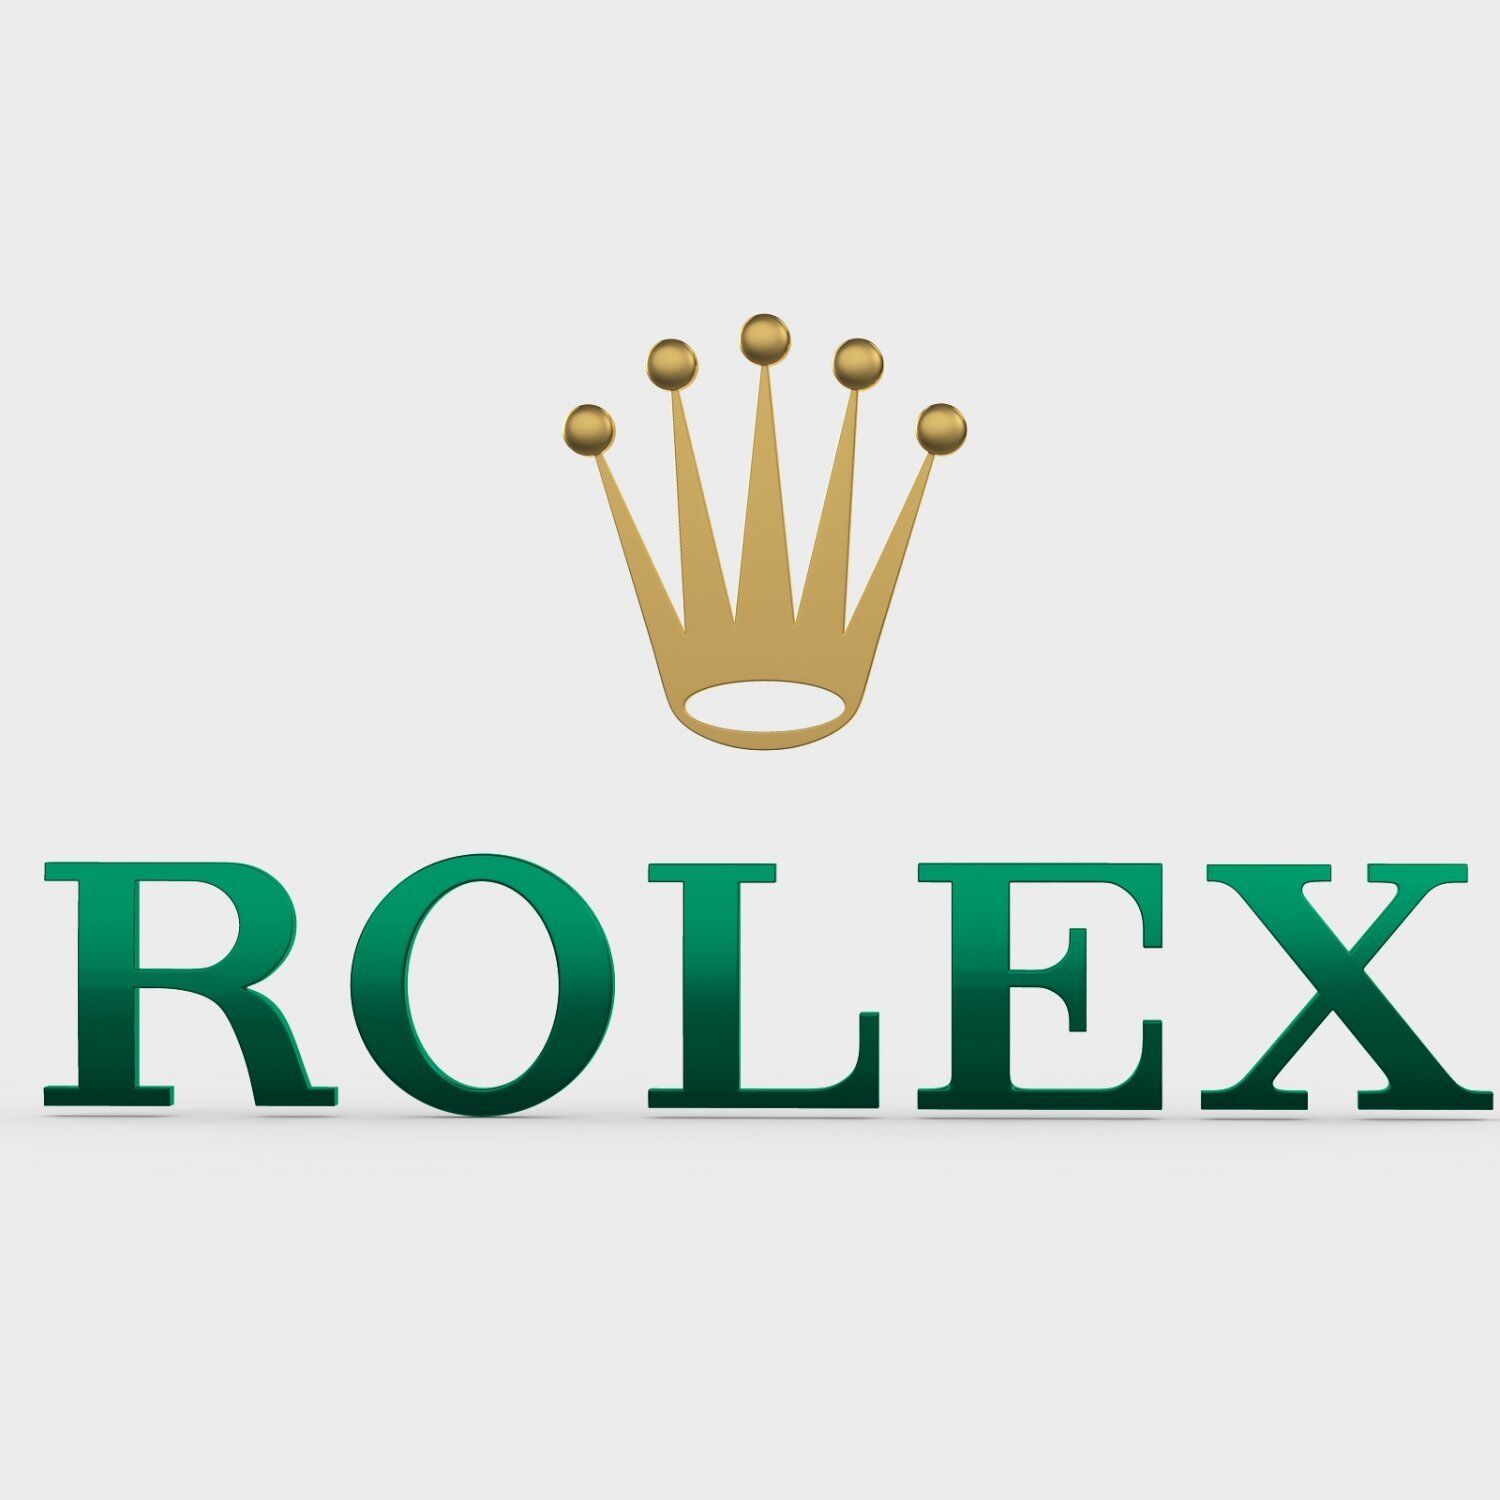 3. Rolex